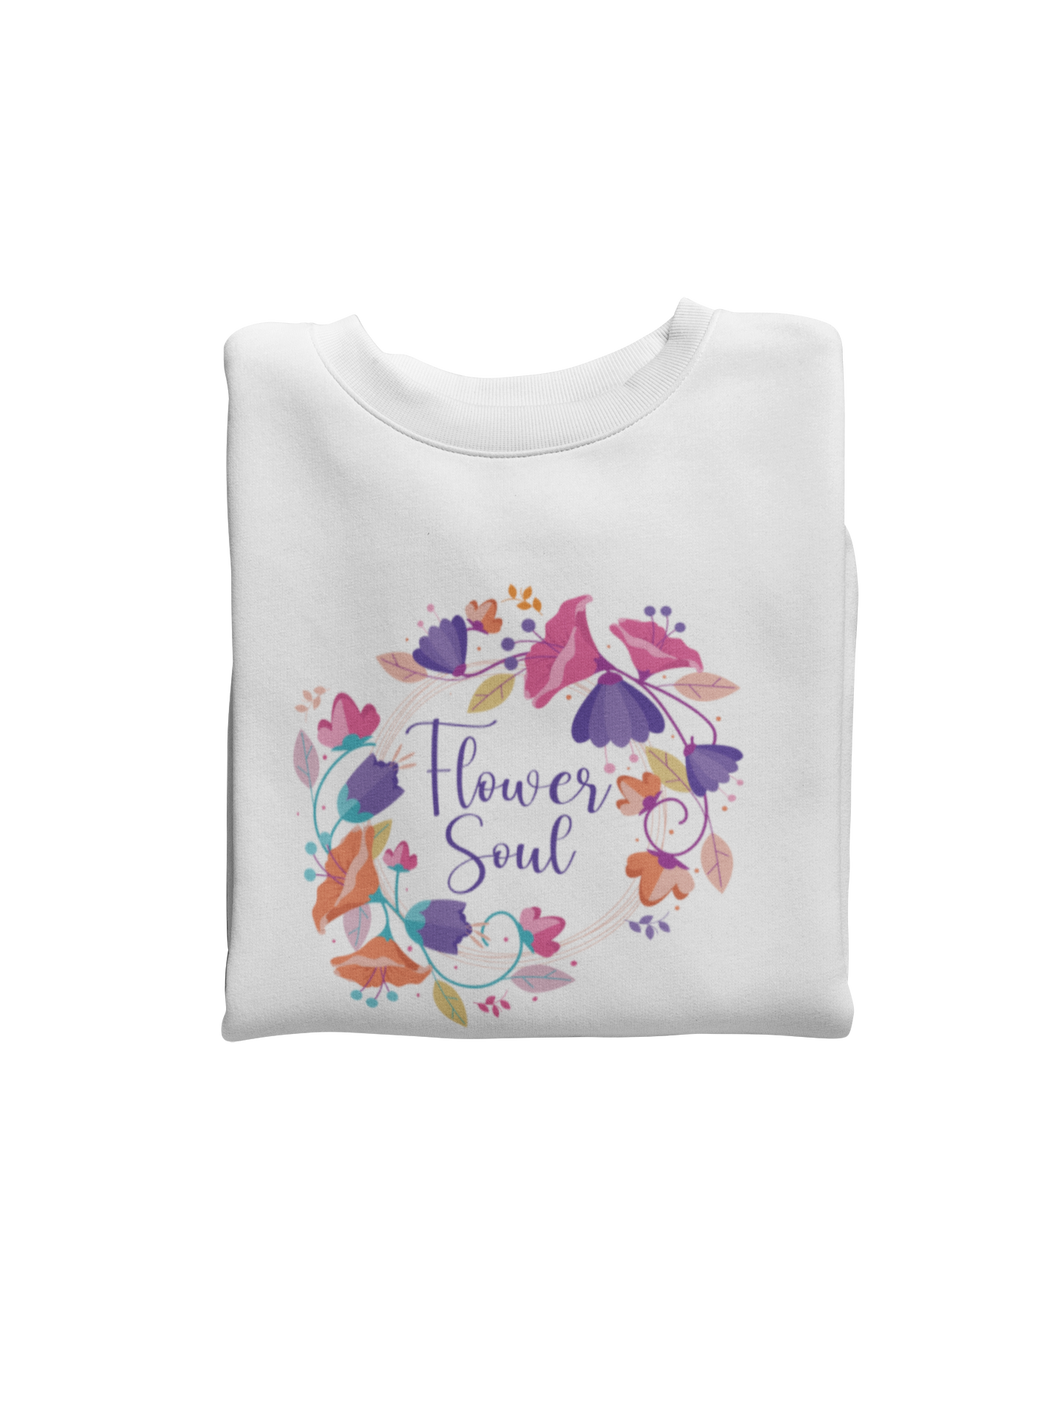 Flower Soul Sweatshirt